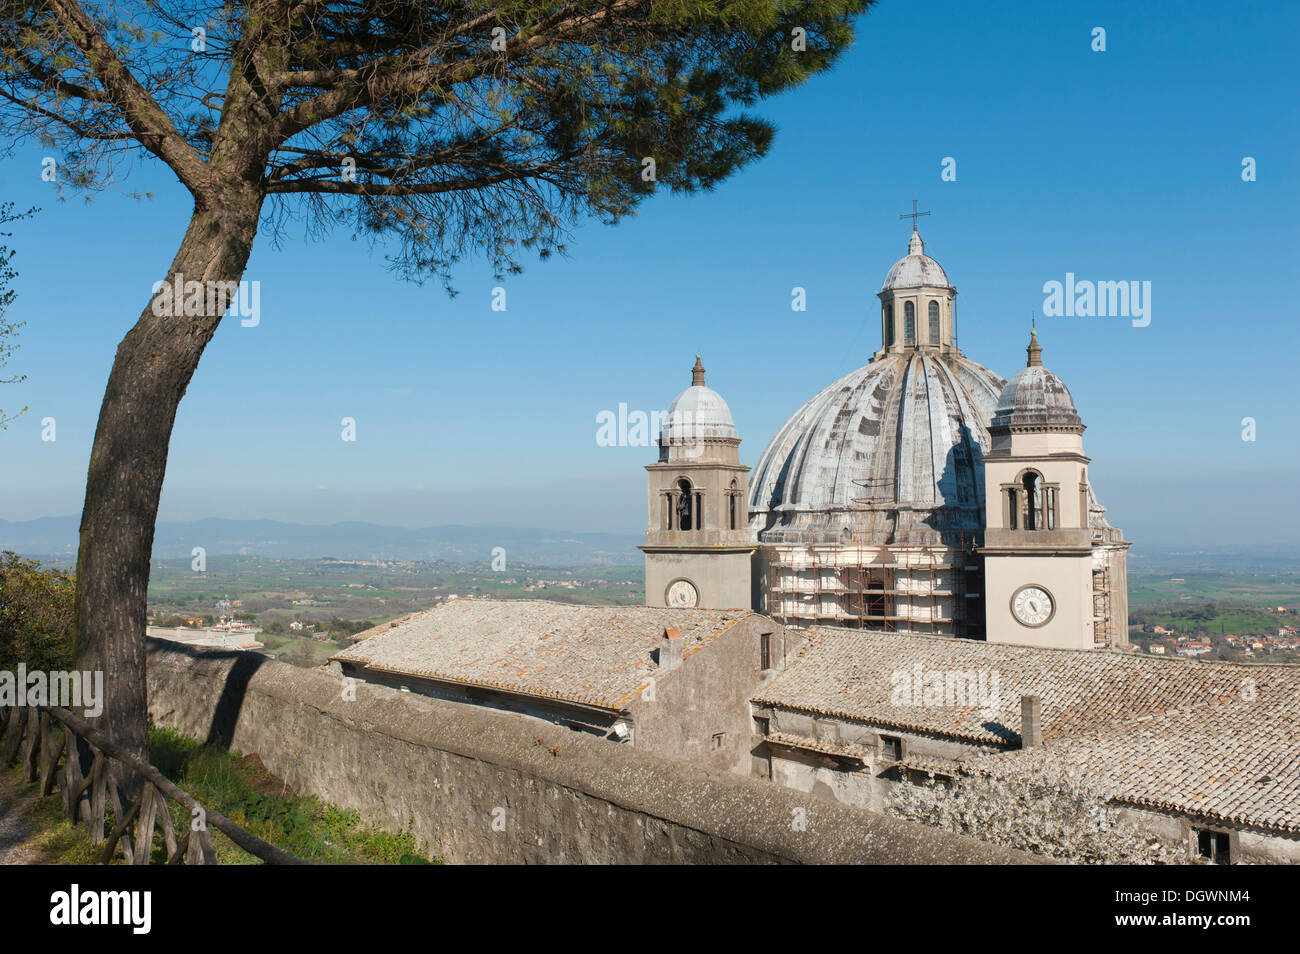 Große Kuppel, Montefiascone Kathedrale, Basilika von Santa Margherita, Montefiascone, Lazio, Italien, Süd-Europa, Europa Stockfoto